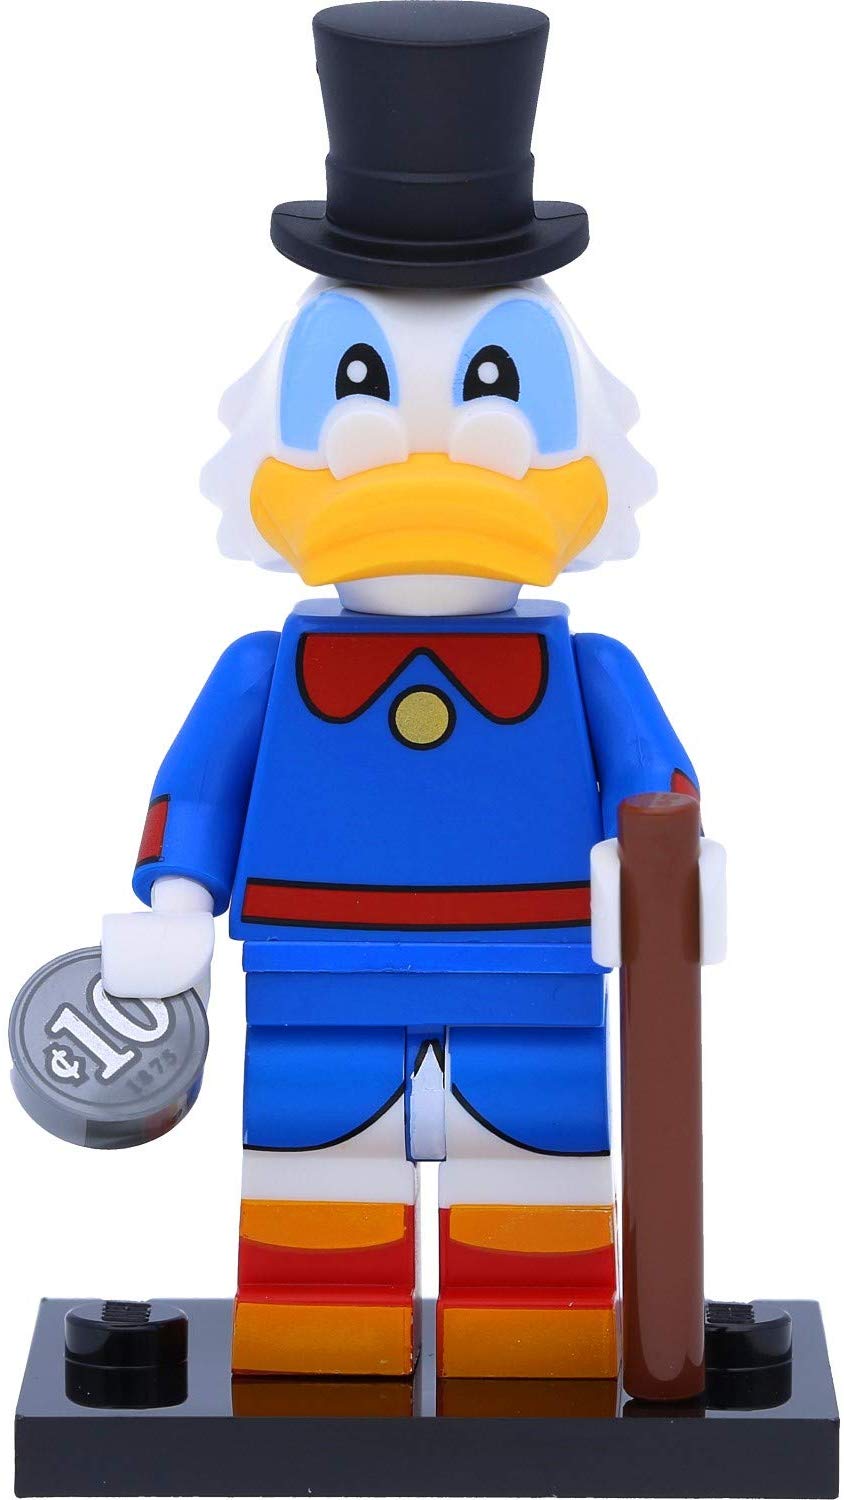 LEGO Disney 71024 Series 2 Minifigures: #6 Dagobert Duck / Scrooge McDuck